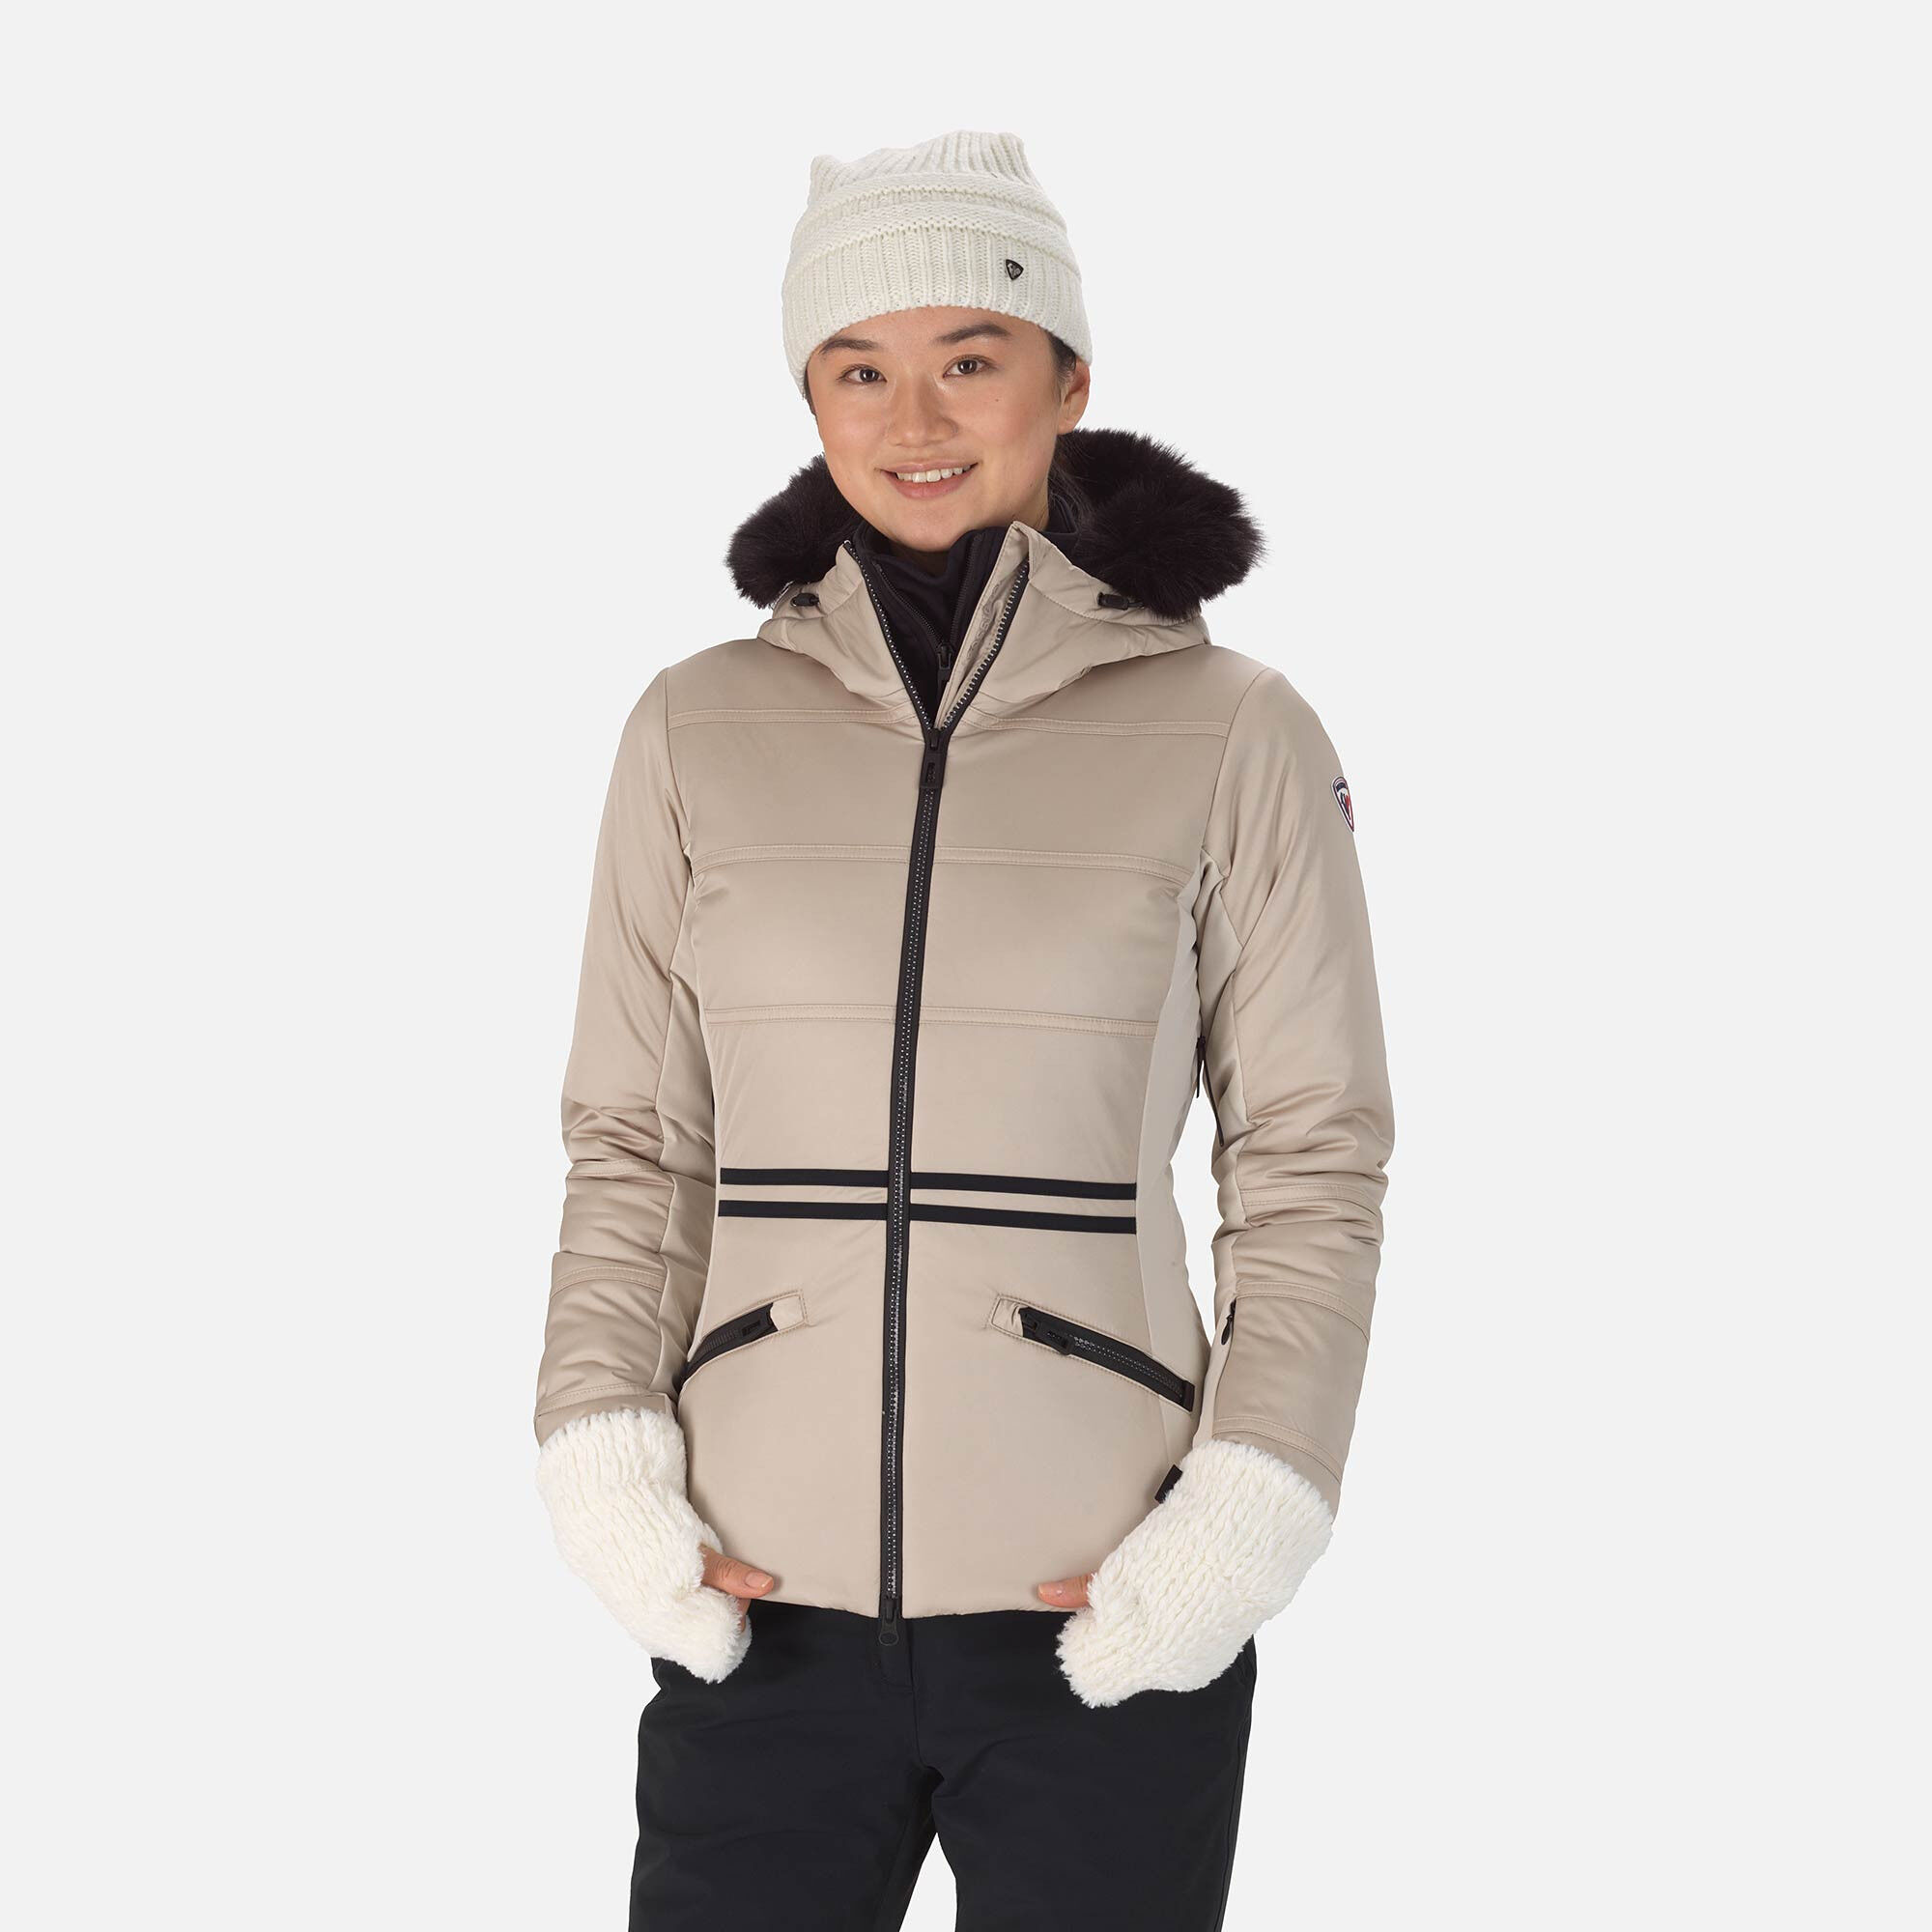 Rossignol W Roc Jkt - Ski jacket - Women's